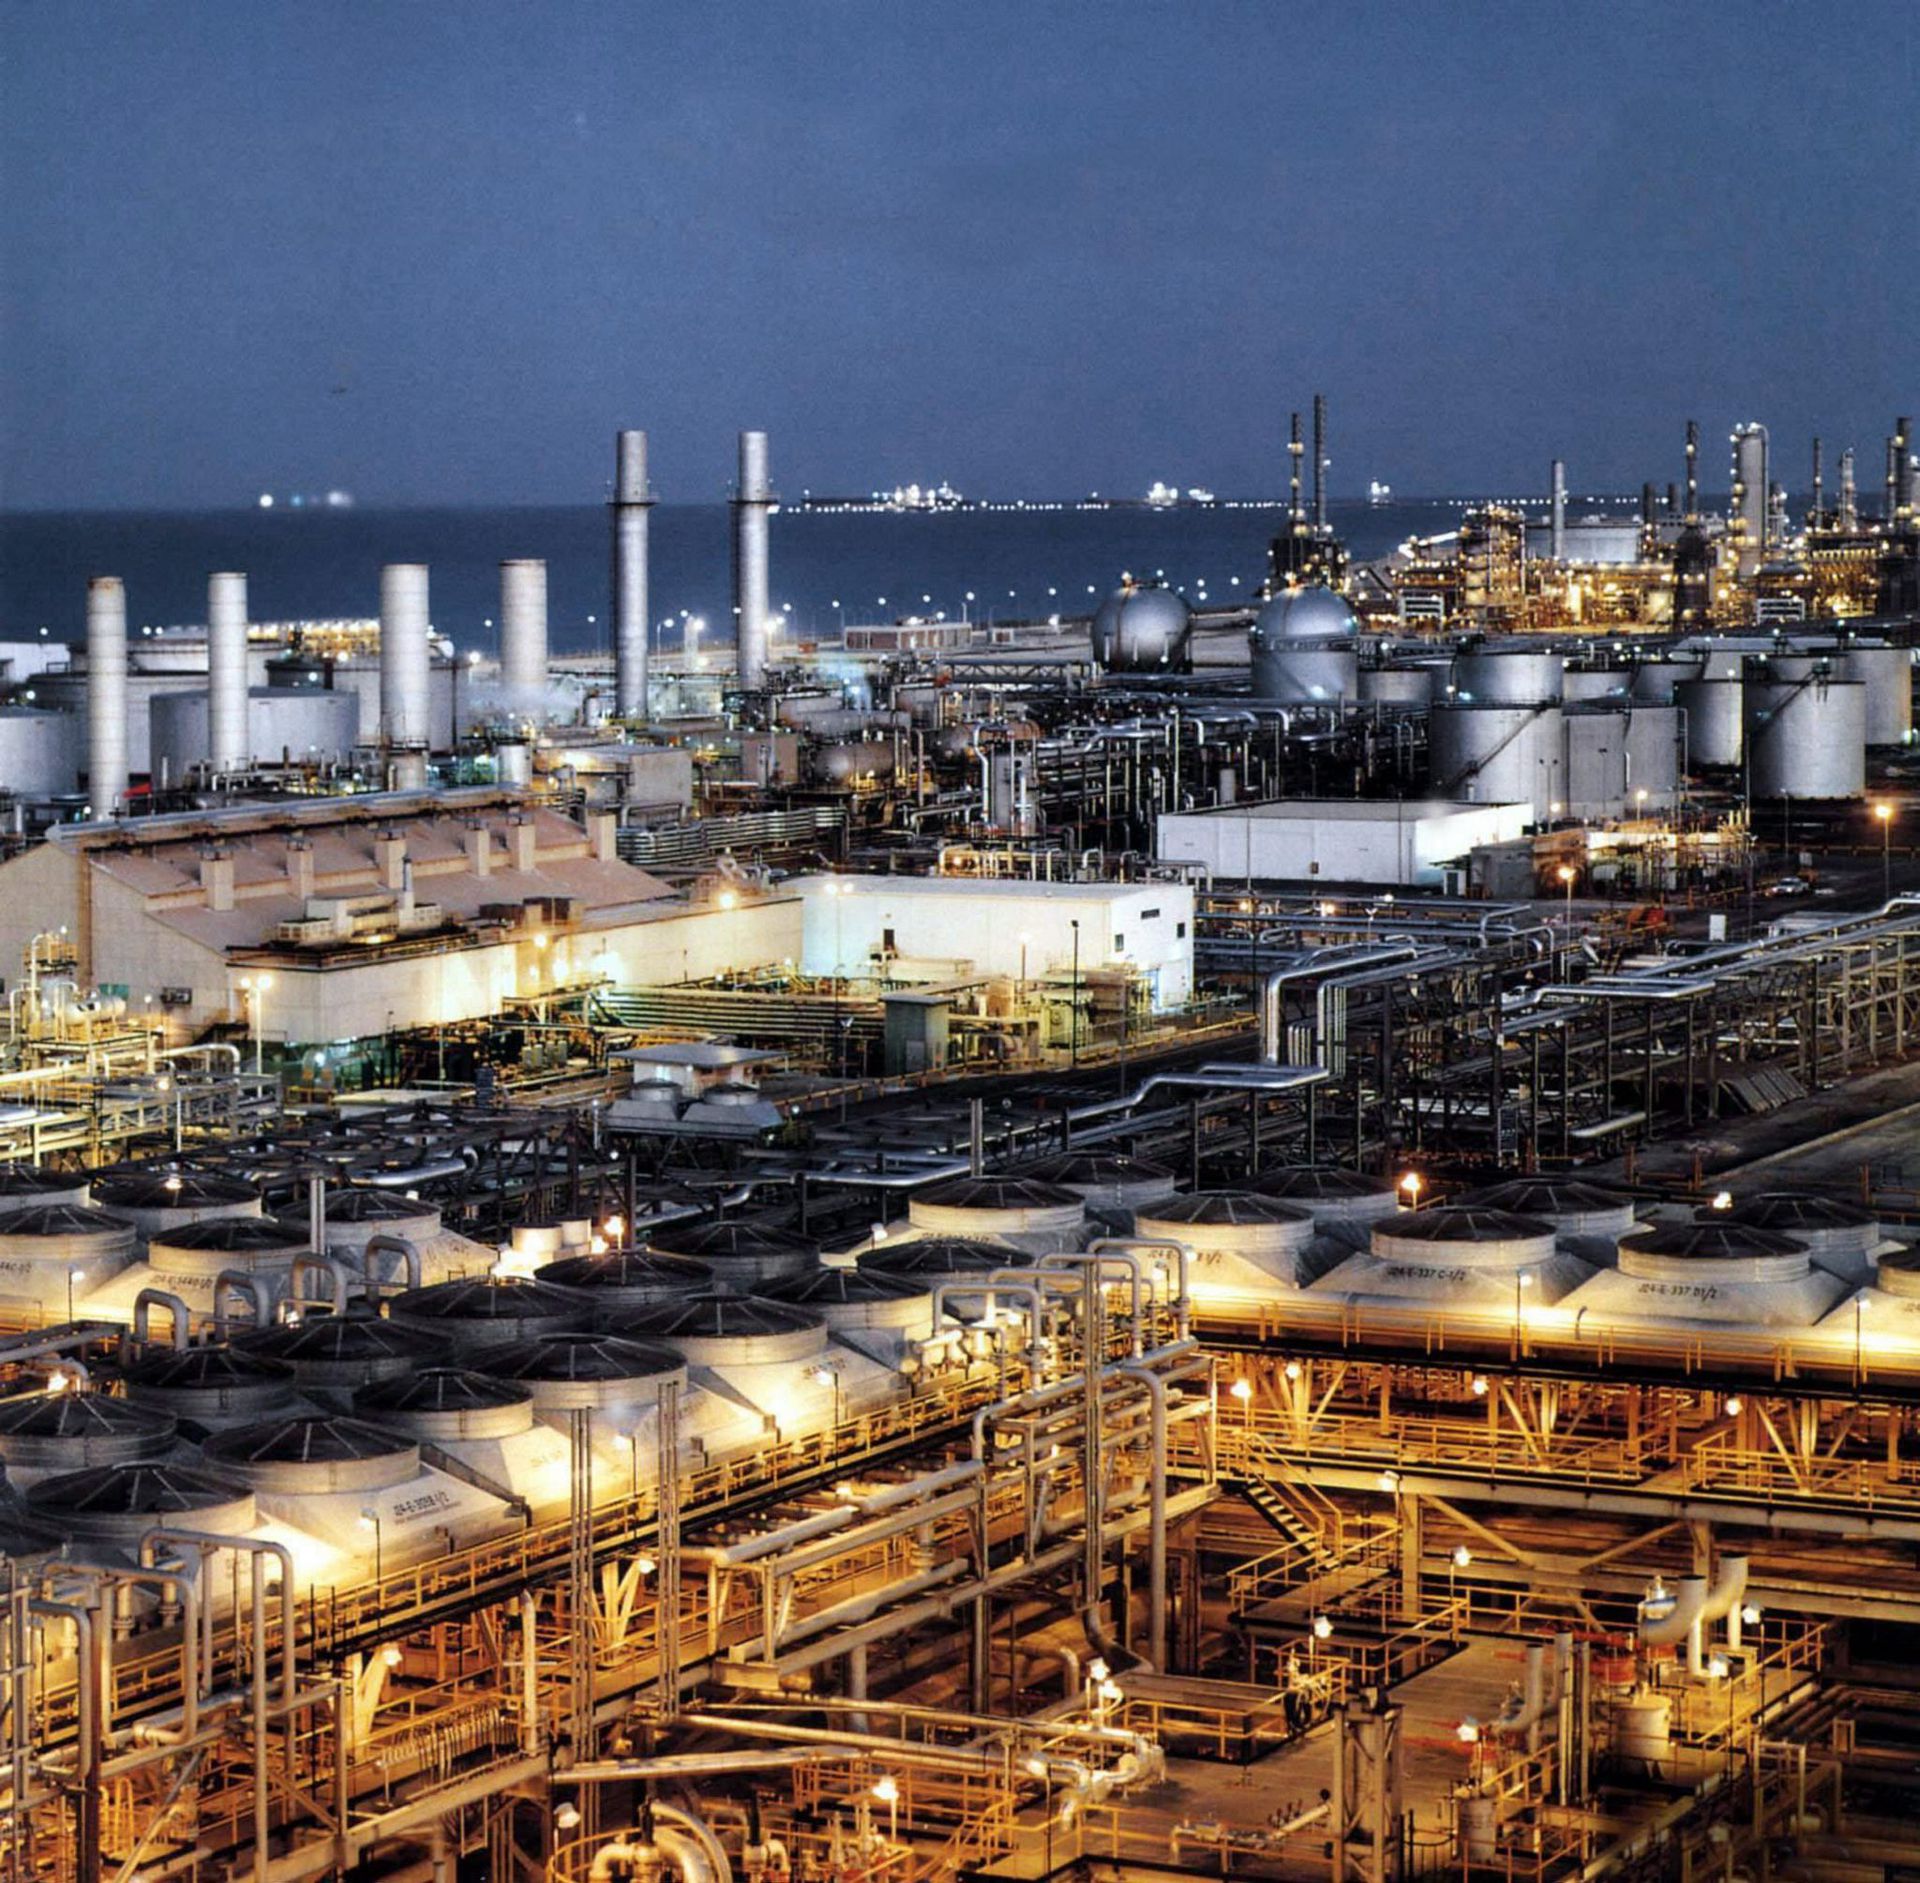 Саудовская аравия производство. Саудовская Аравия нефтедобыча. Химический завод Саудовской Аравии. НПЗ Саудовской Аравии. Нефтеперерабатывающий завод США.